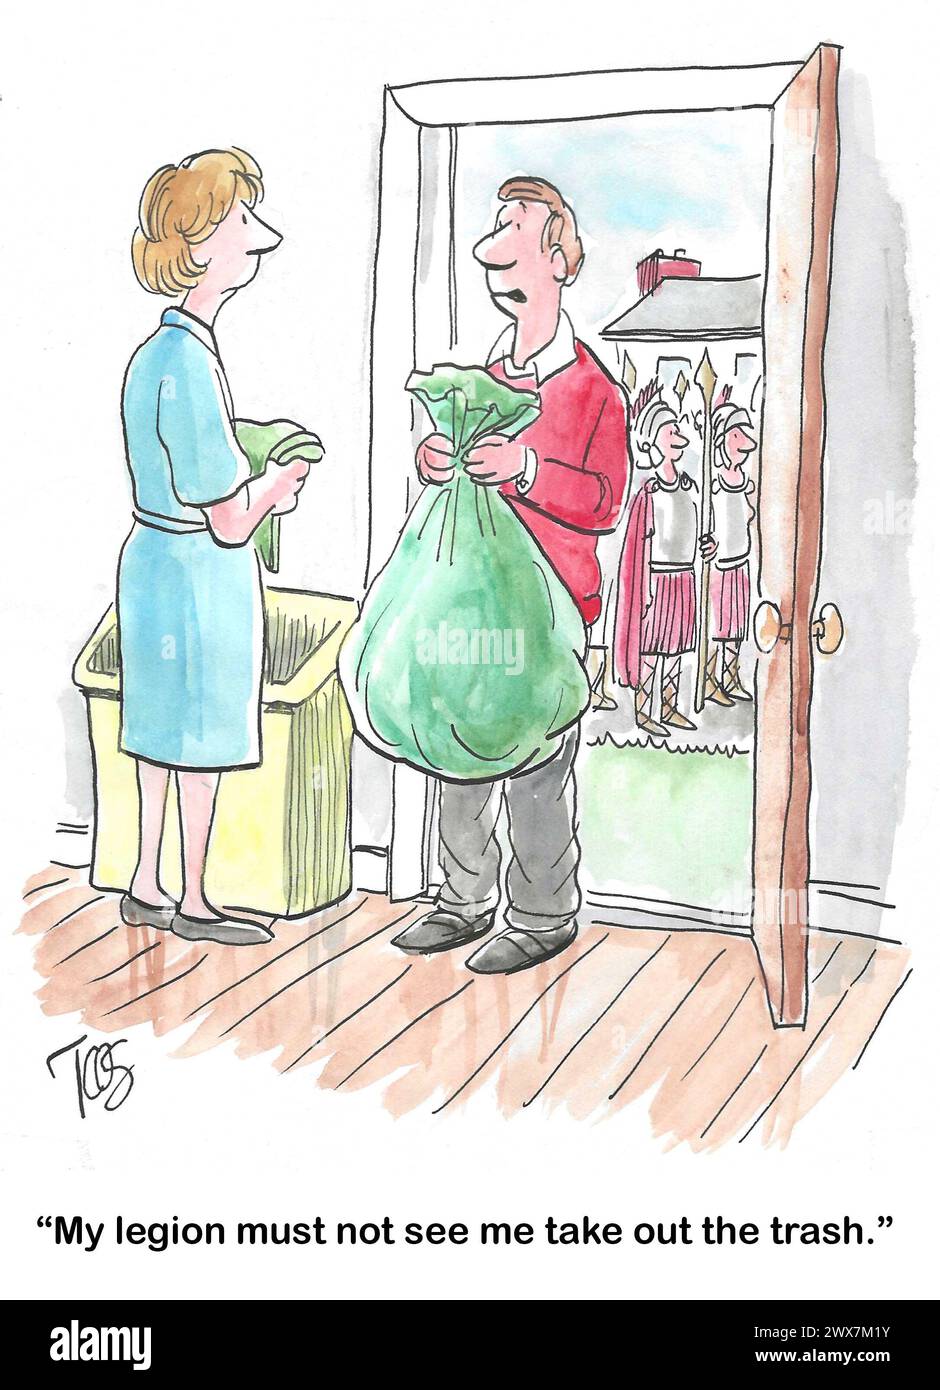 Cartone animato a colori di un marito imbarazzato per far vedere alla sua legione che sta portando fuori la spazzatura domestica. Foto Stock